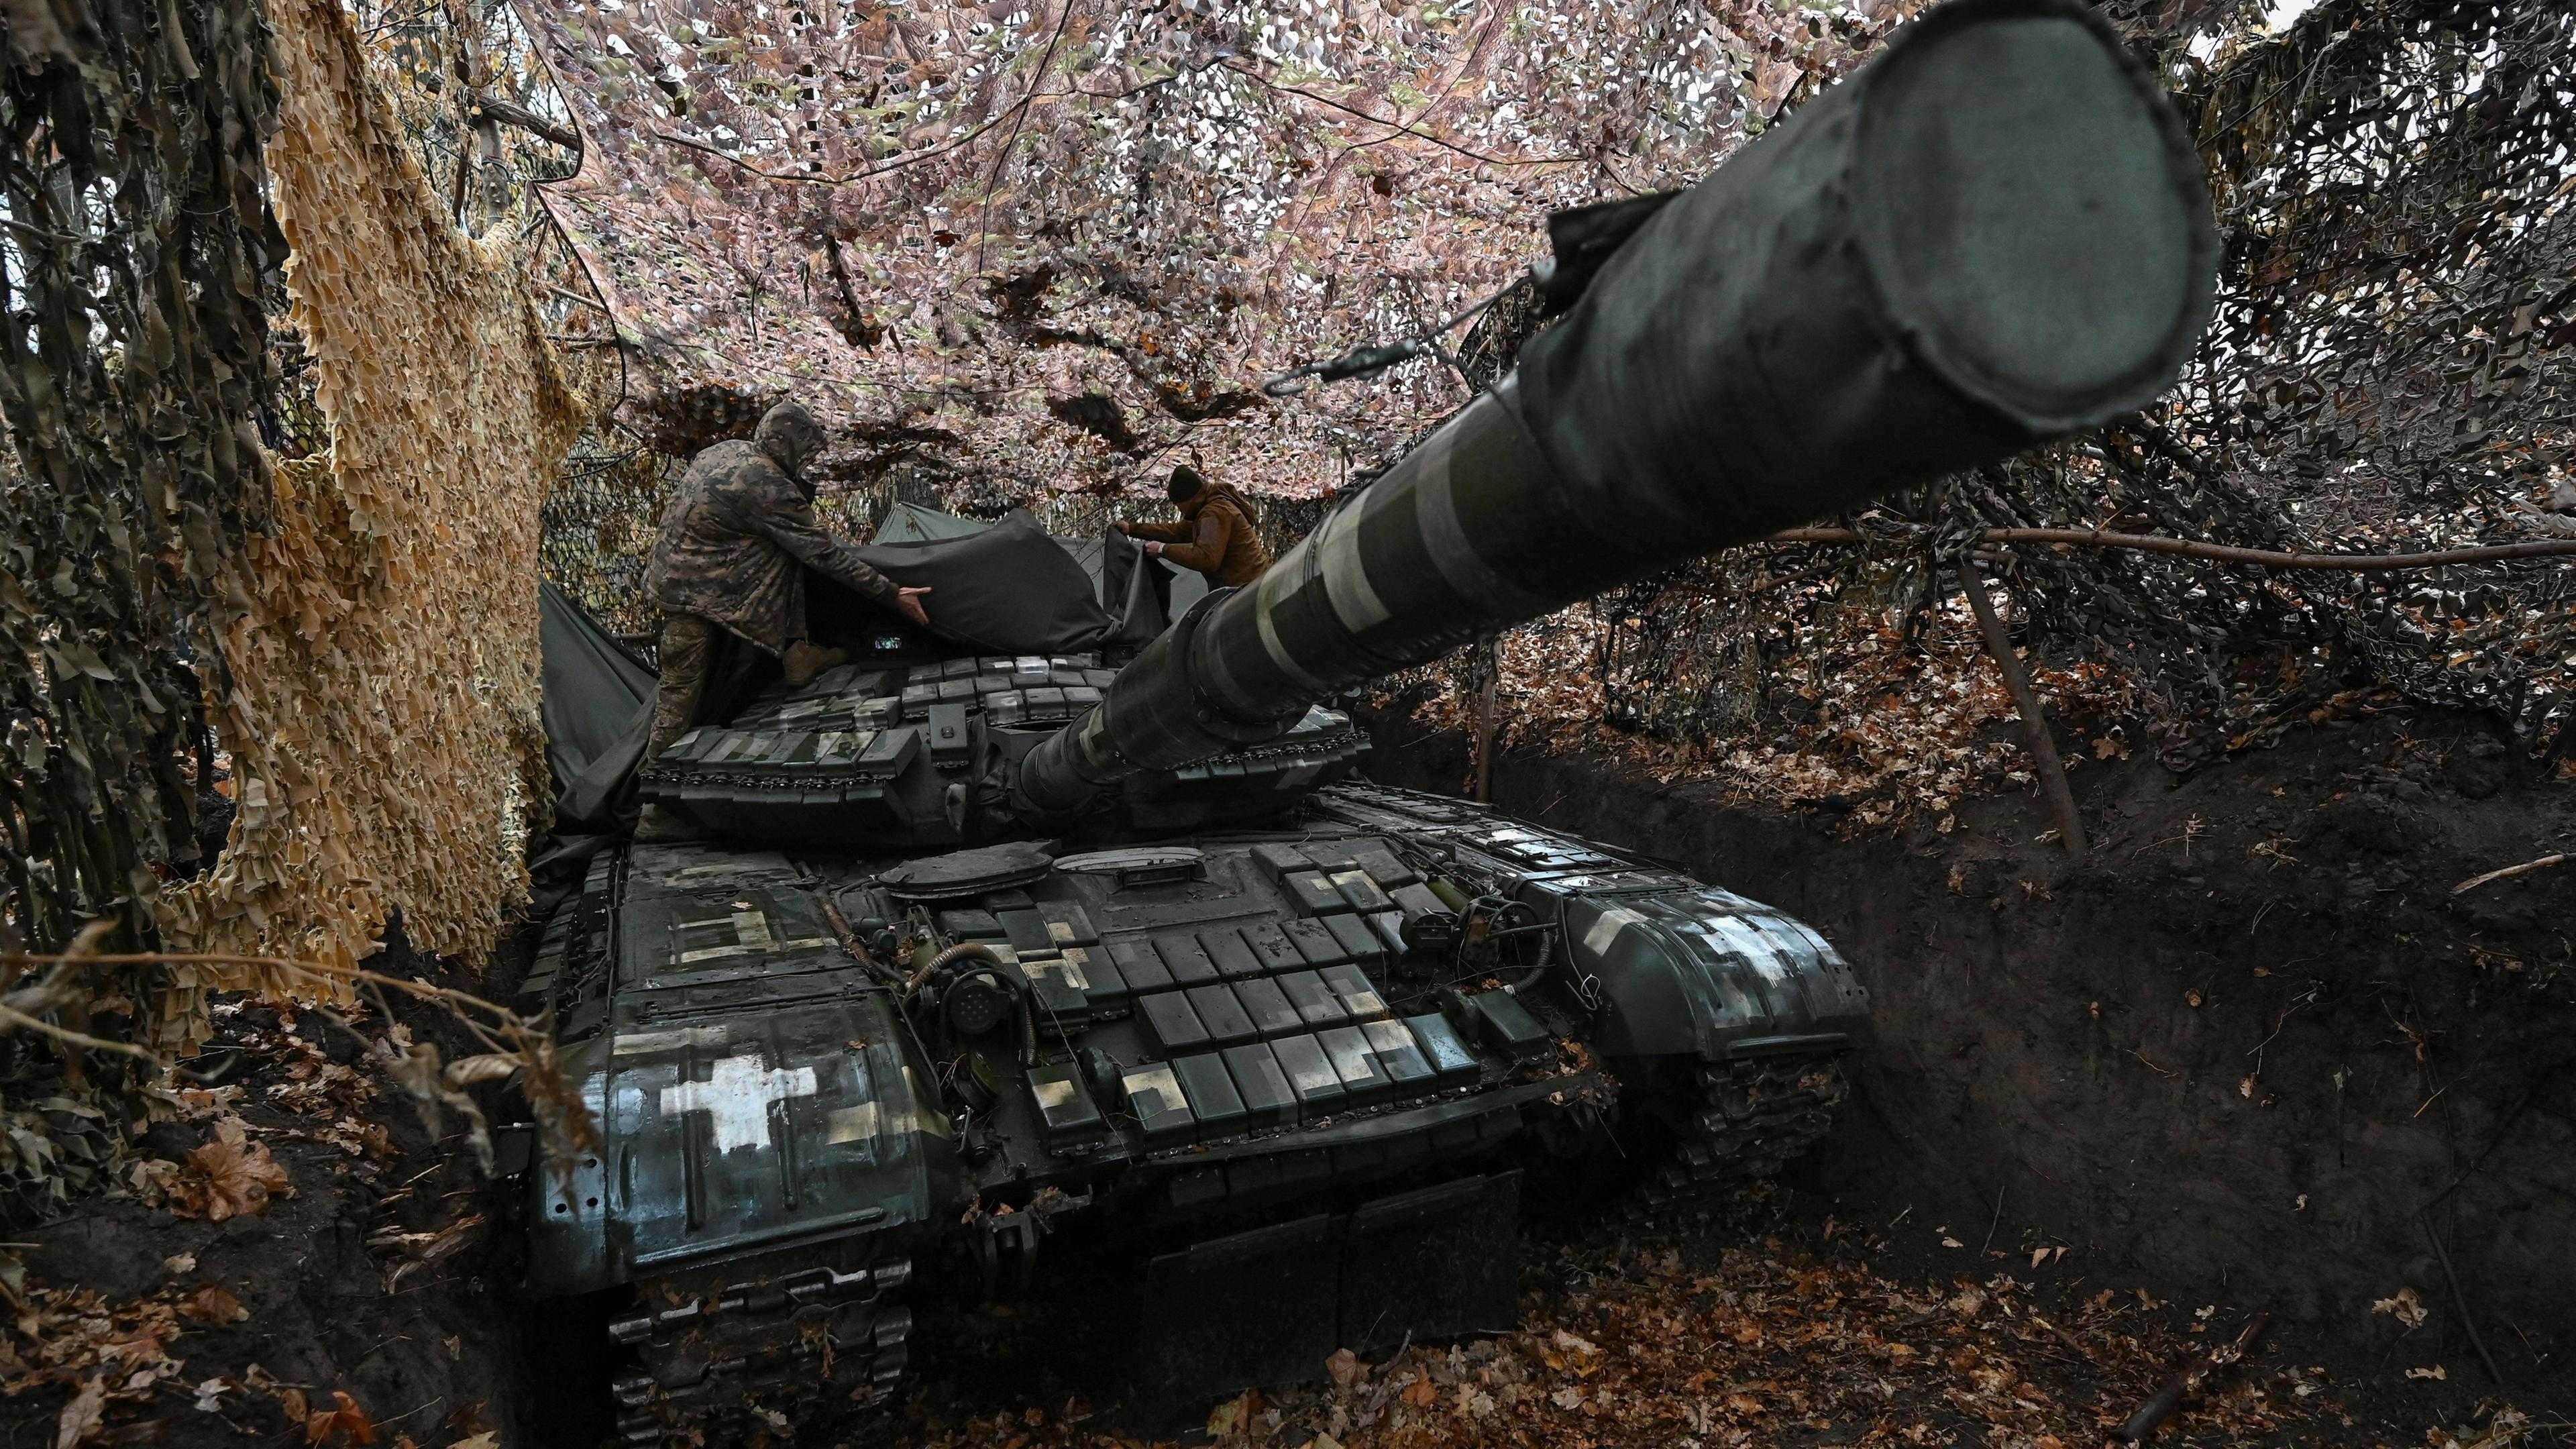 Ukrainische Soldaten an einem T-64 Panzer